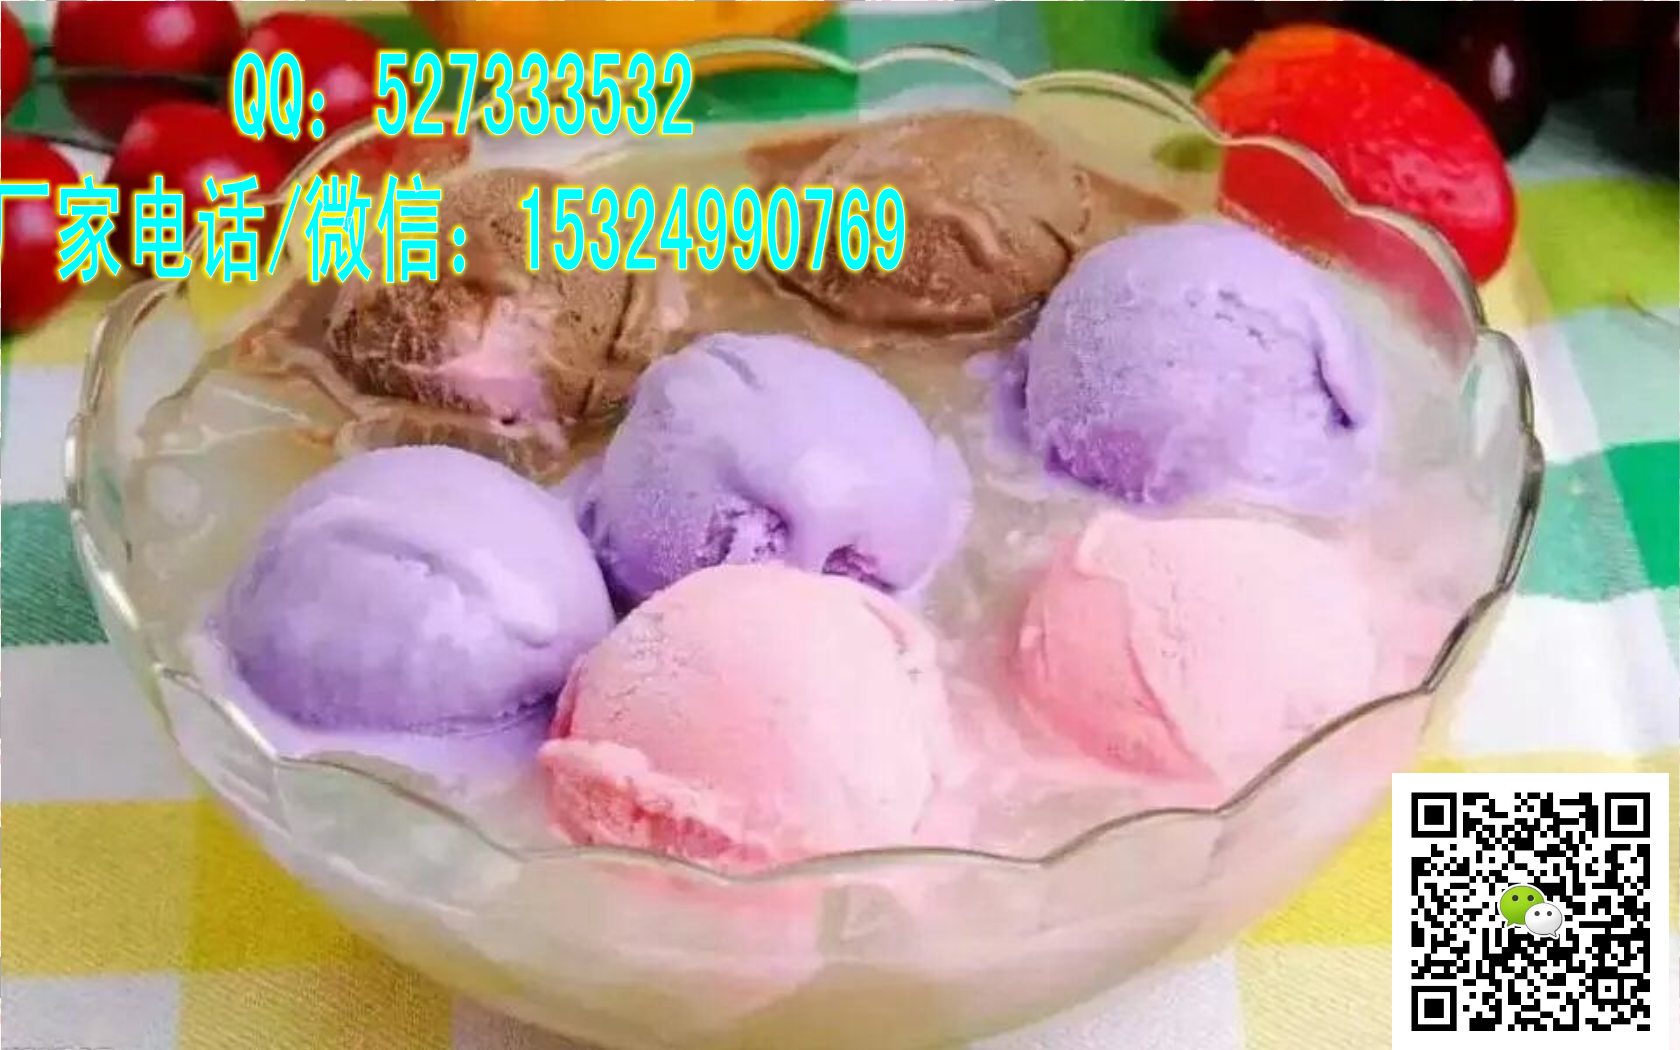 南阳炒酸奶机厂南阳炒酸奶机专卖旗舰店_3